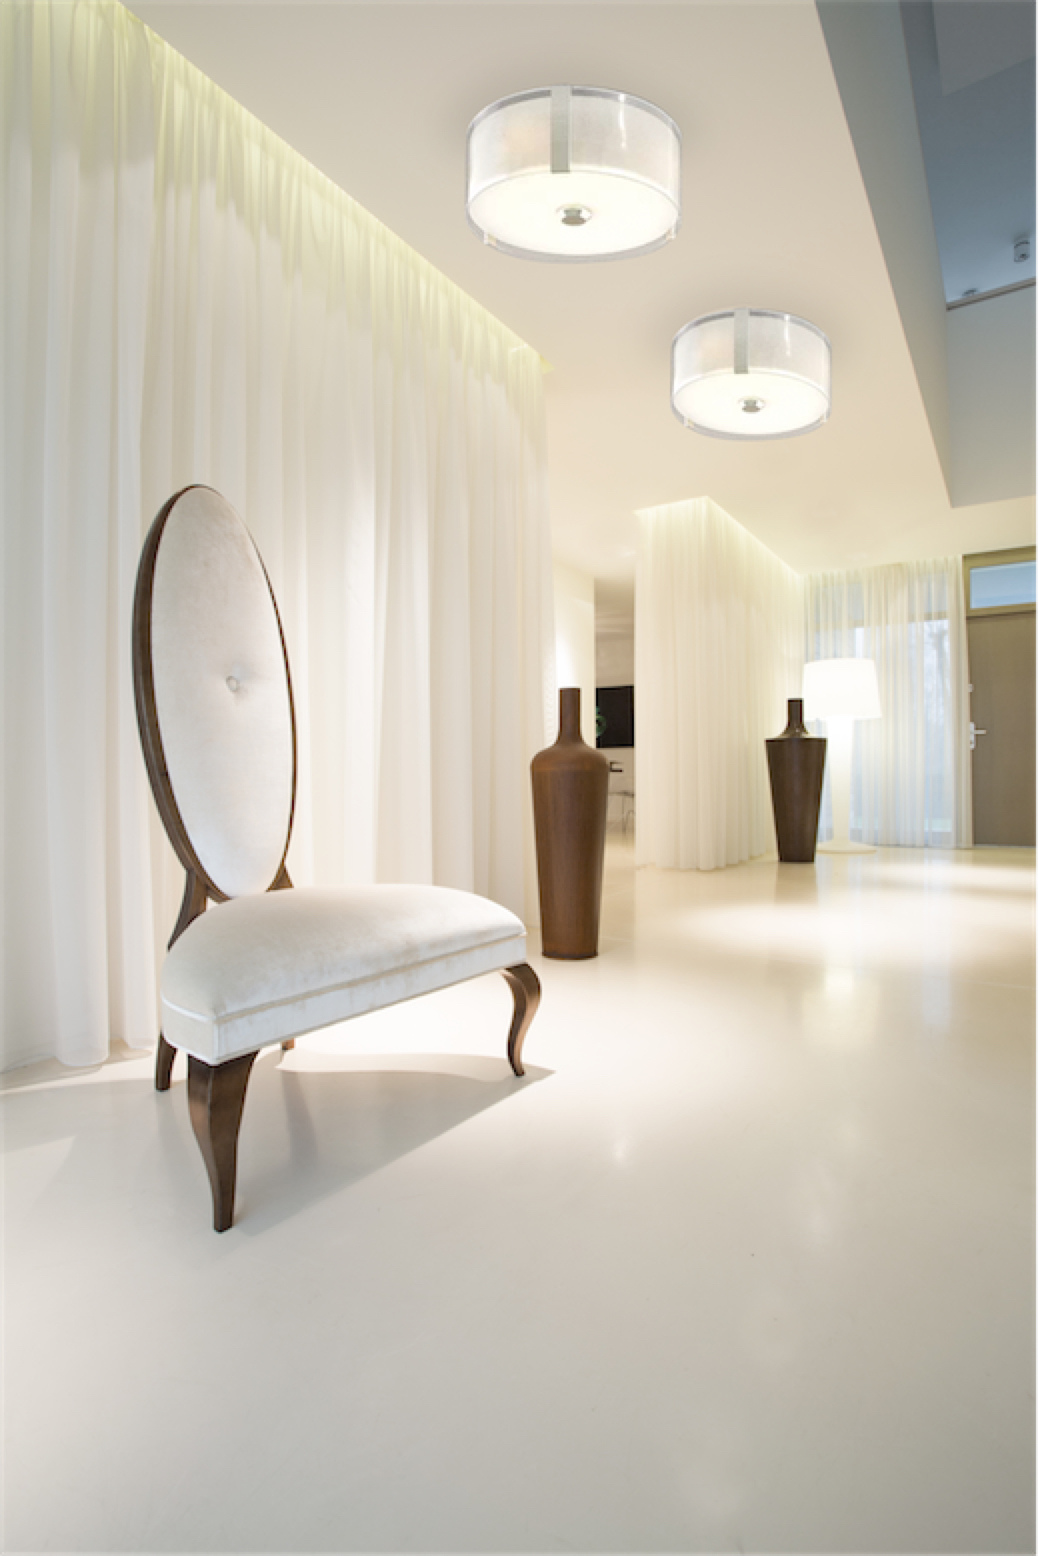 Luminaire semi-plafonnier contemporain ZURICH Dvi DVP14594CH-SS-OP dans une chambre avec fauteuil luxueux et rideaux blancs